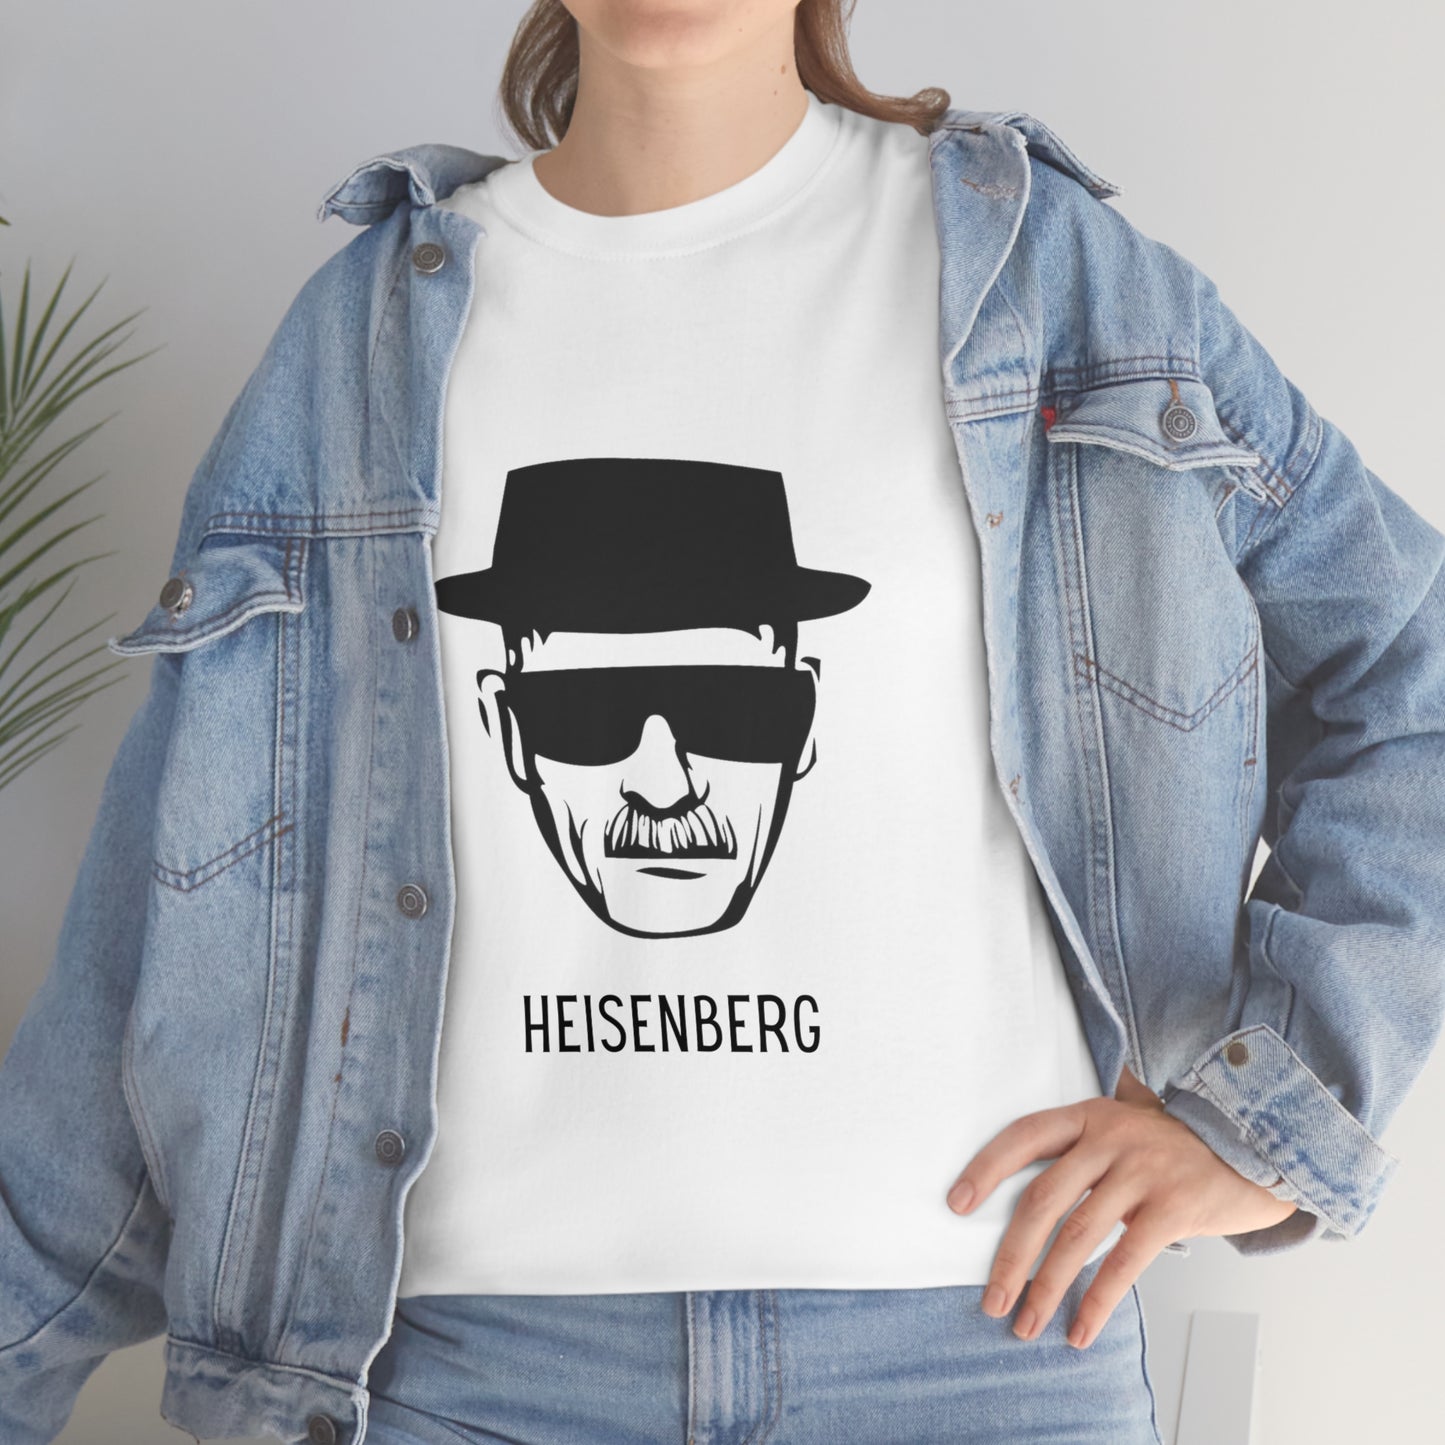 Heisenberg Minimalist Unisex T-Shirt Looper Tees